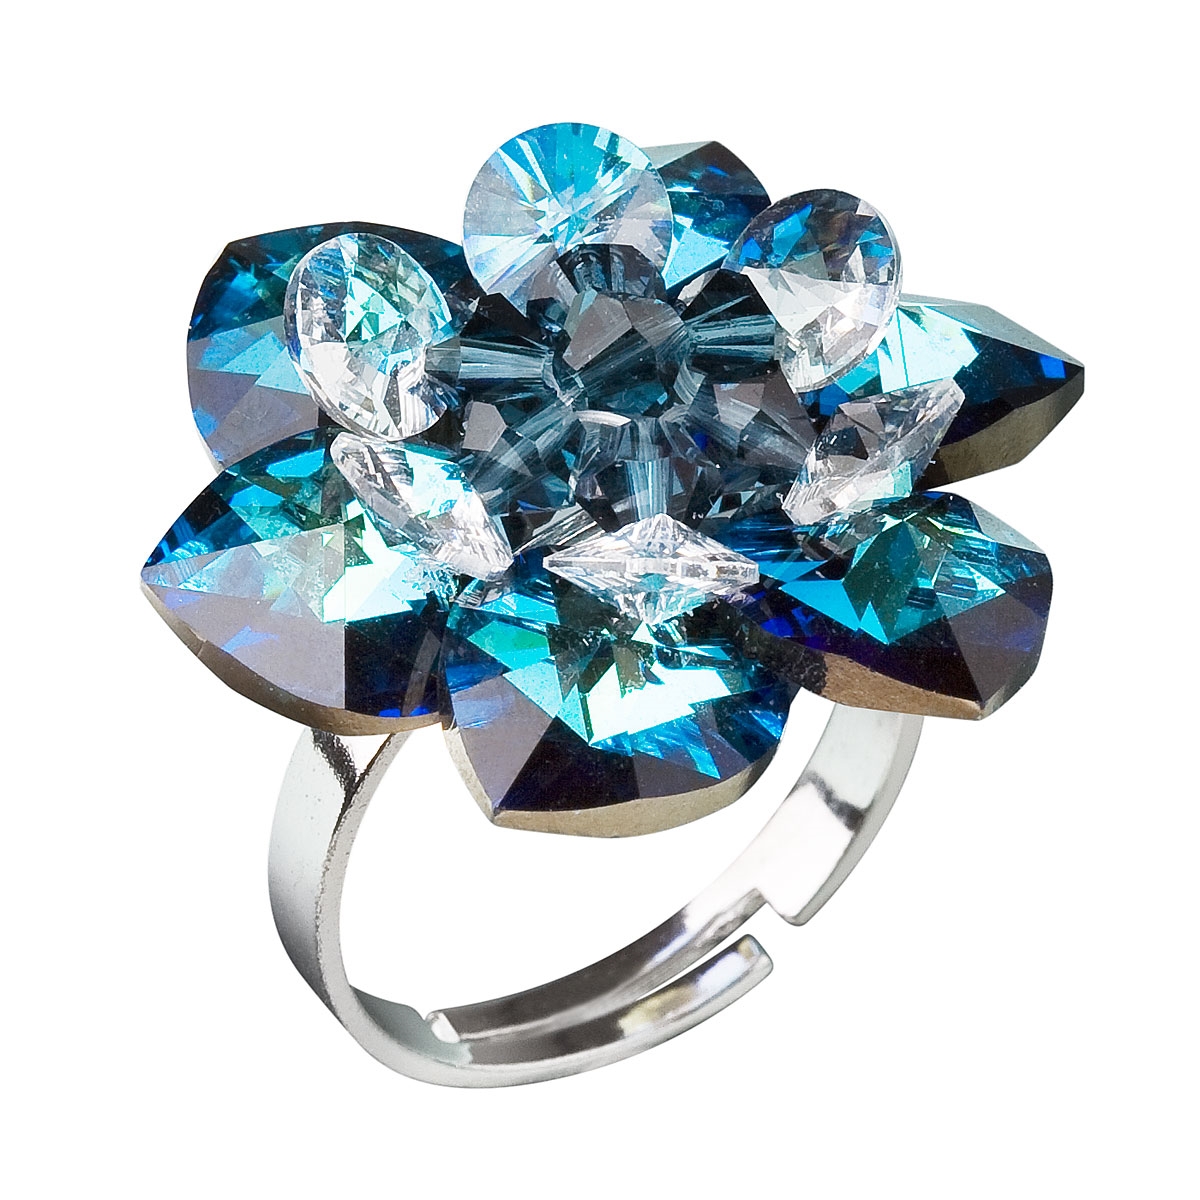 Strieborný prsteň s kryštálmi Swarovski modrá kytička